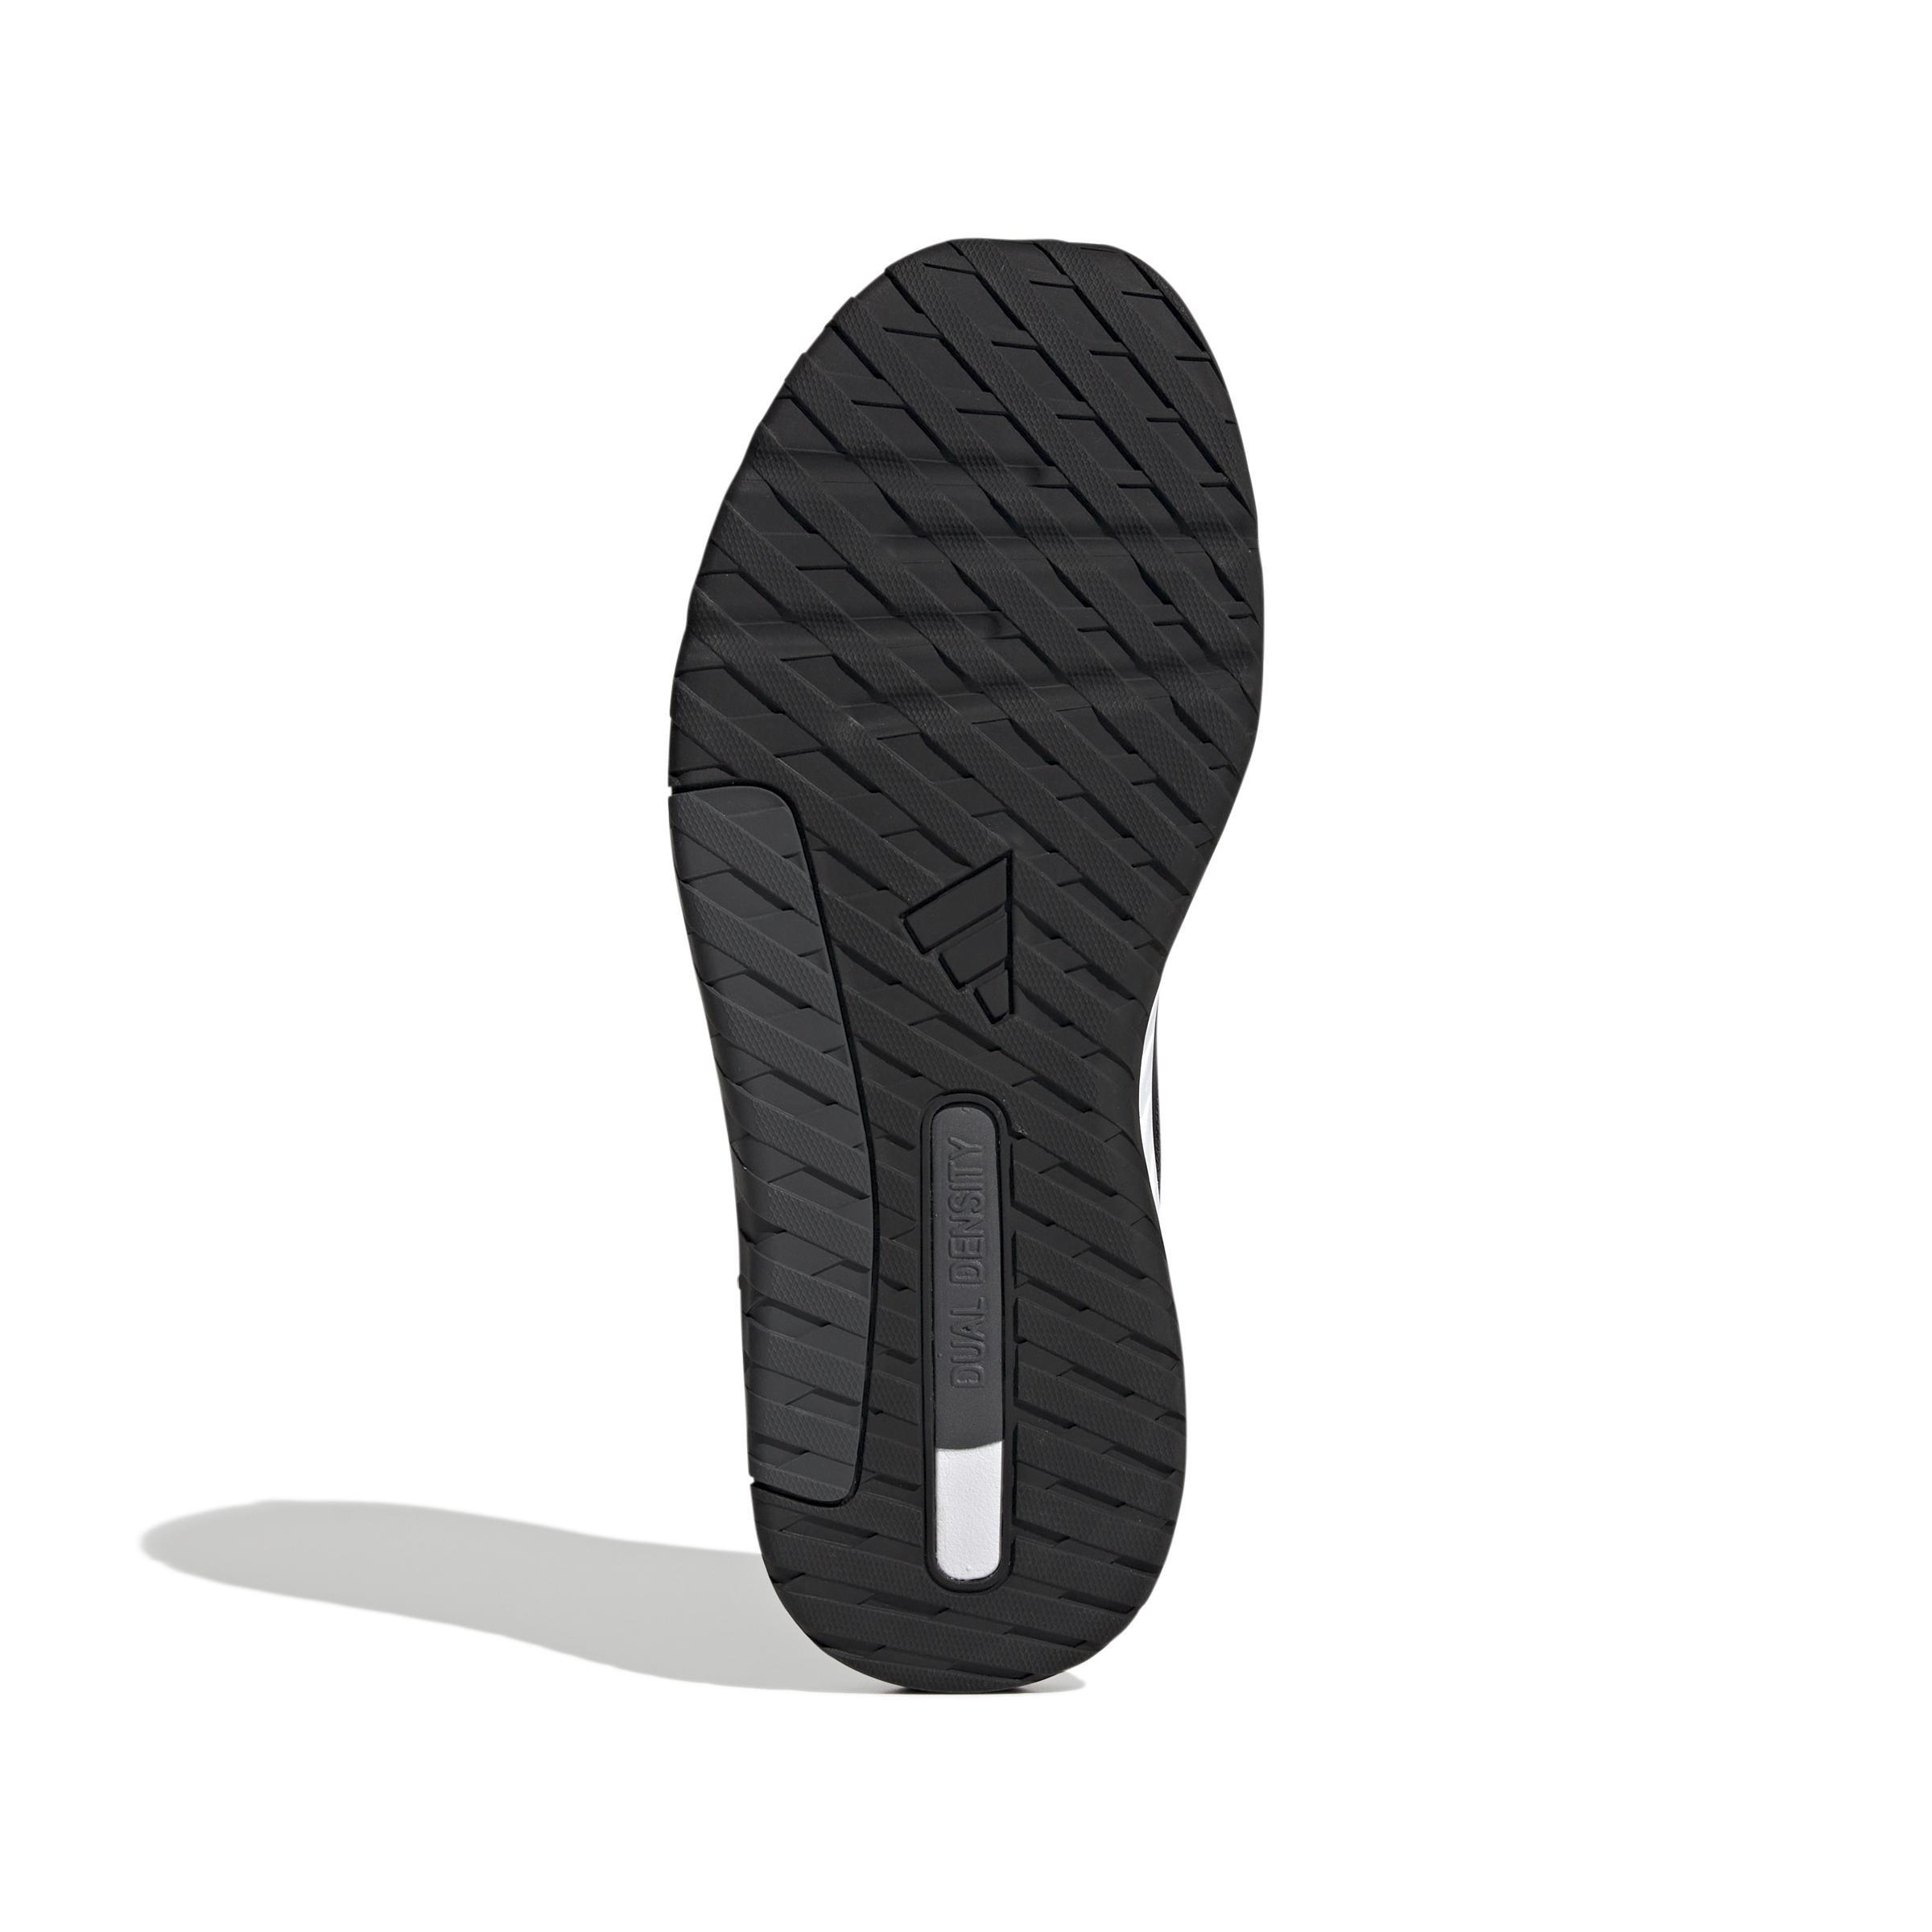 adidas - Unisex Everyset Shoes, Black